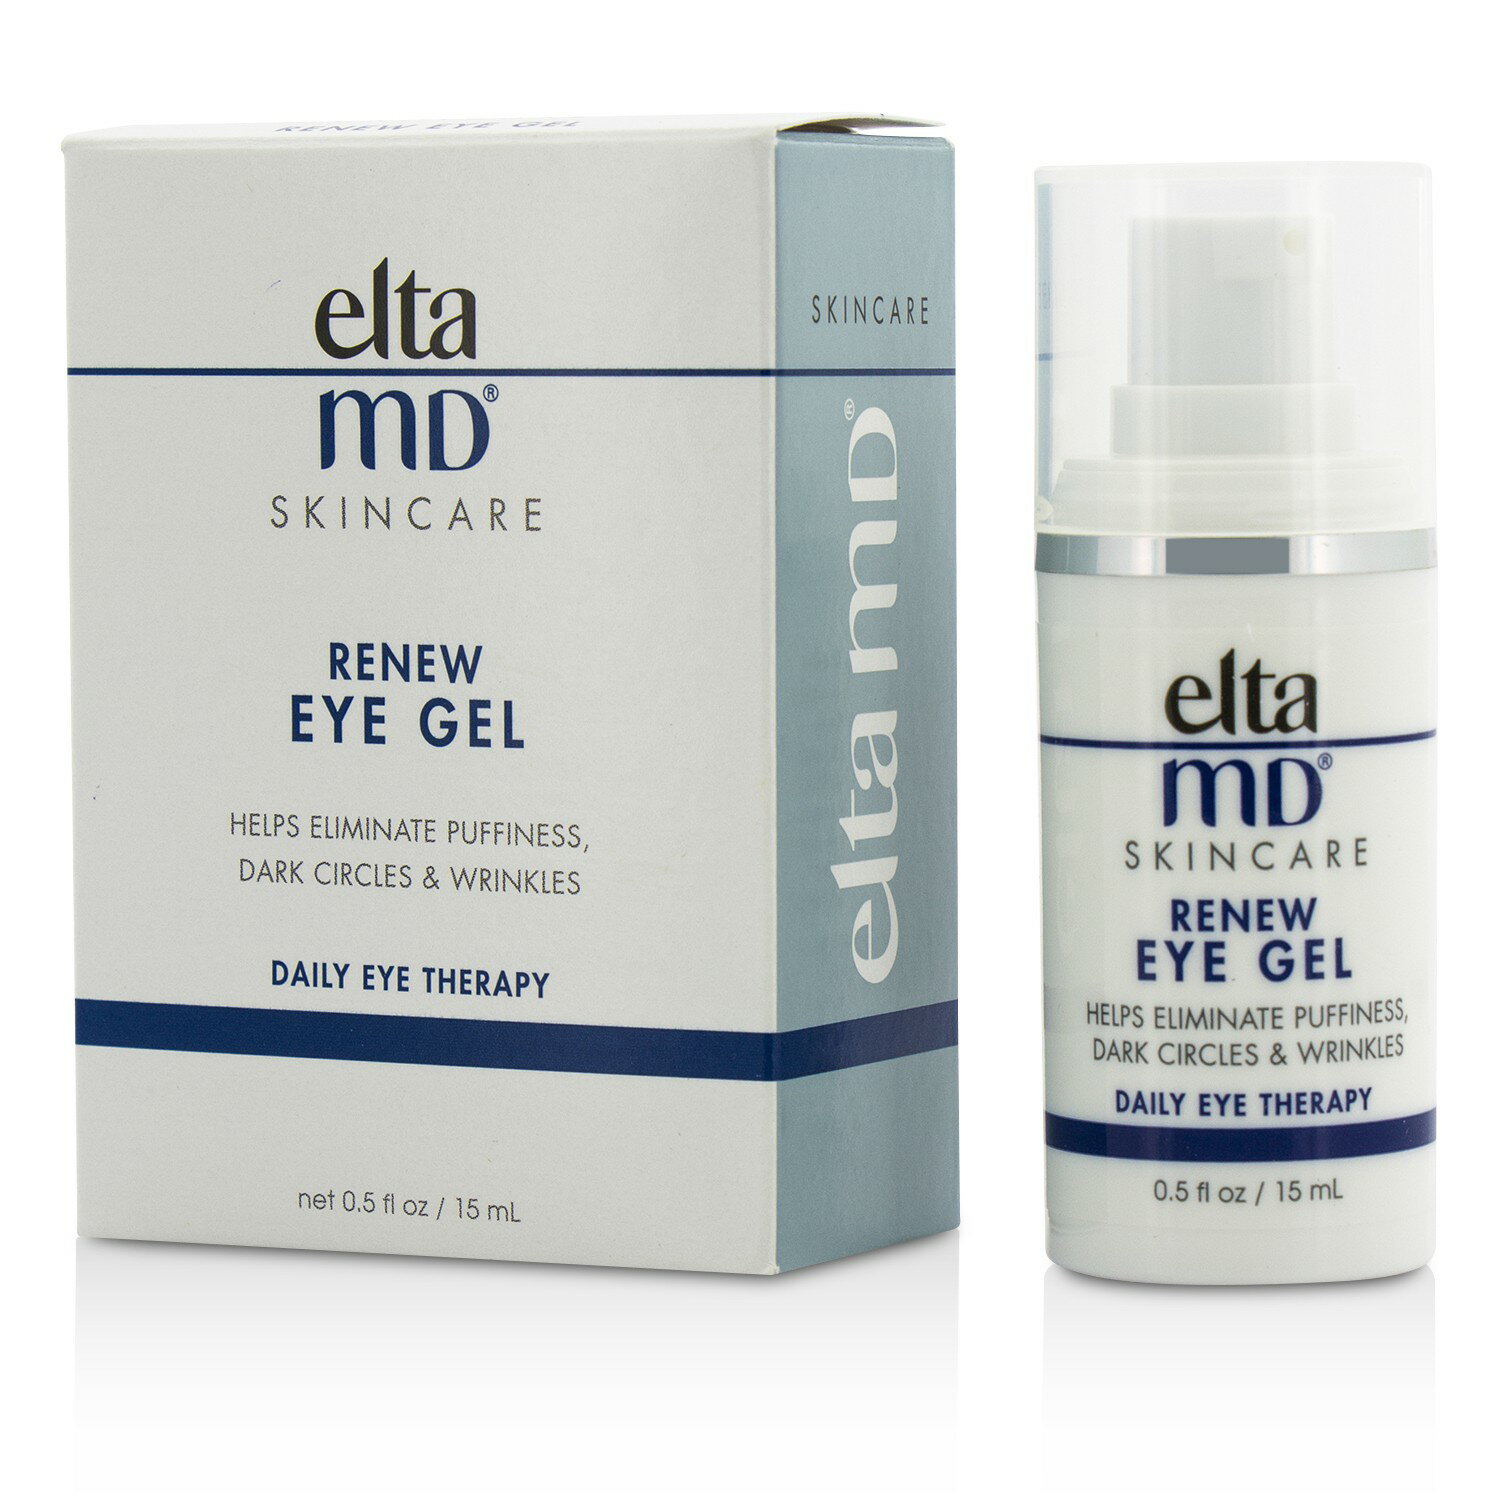 創新專業保養品 EltaMD - 賦活眼部凝膠 Renew Eye Gel